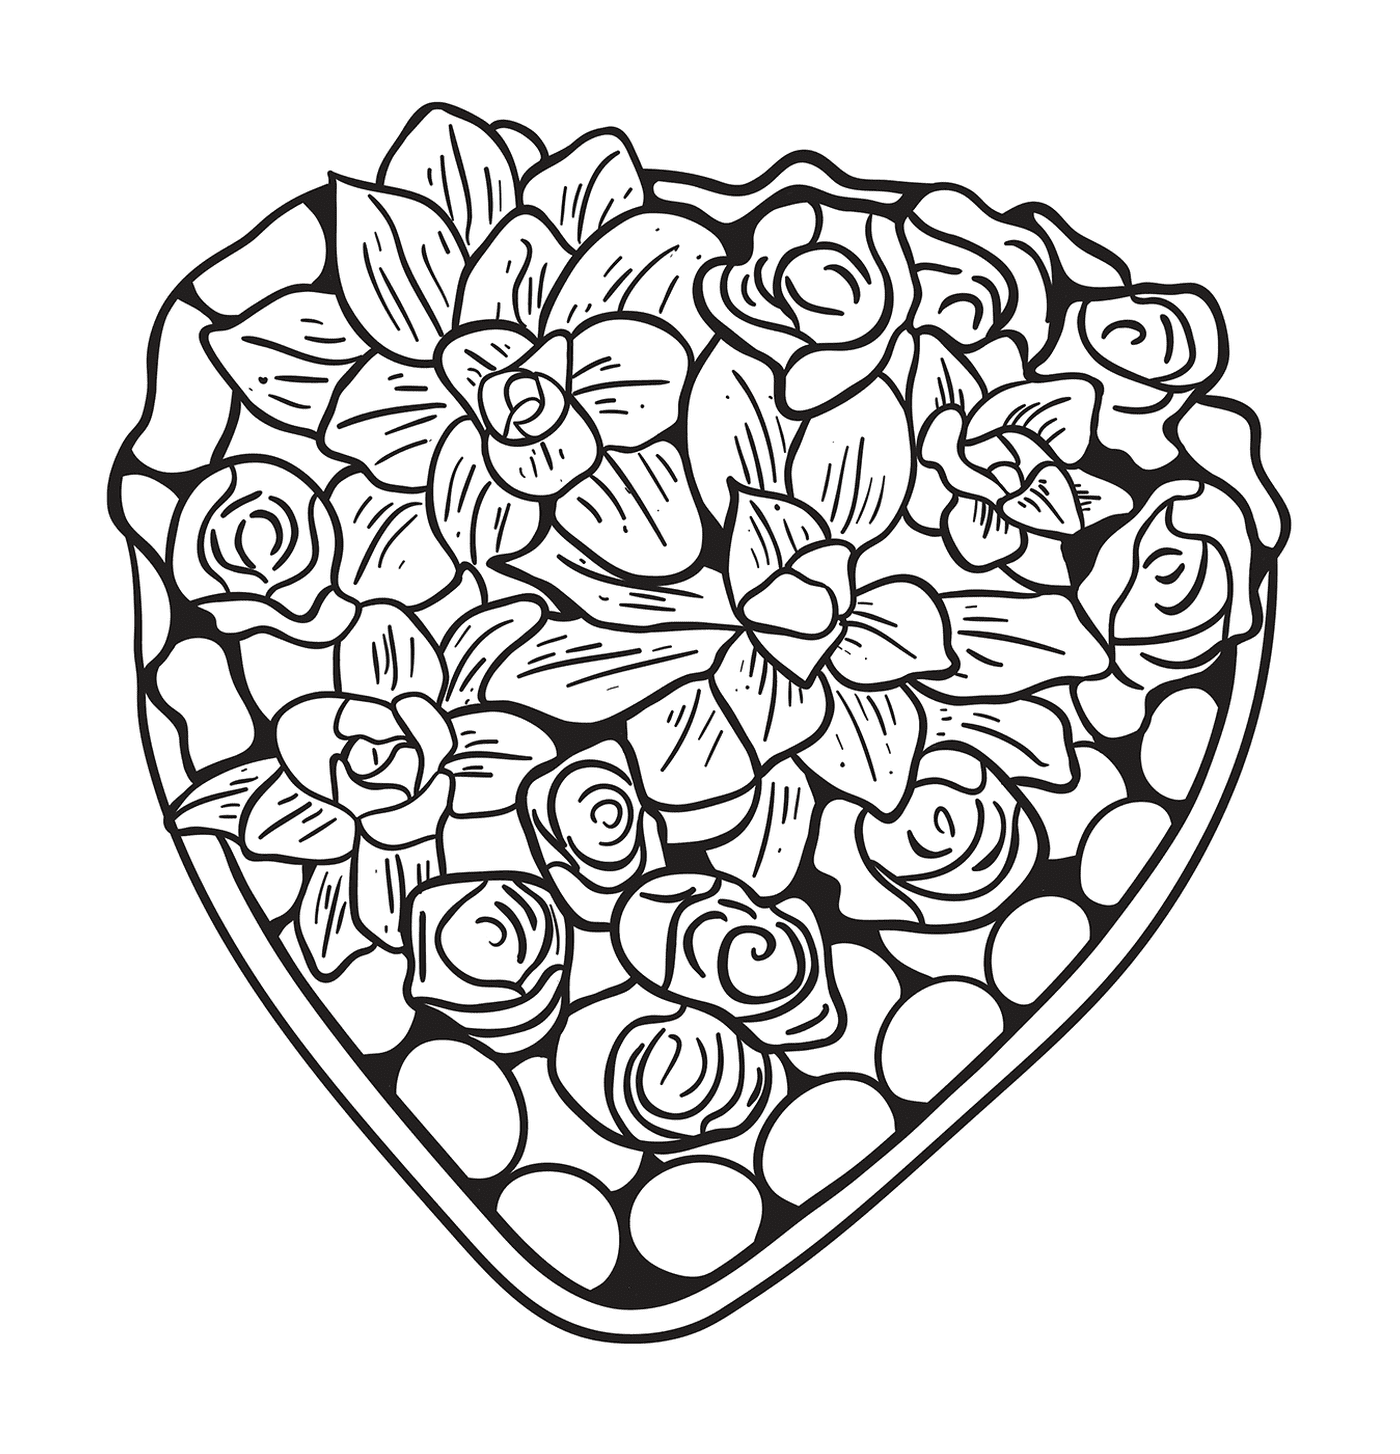  Милое сердце, состоящее из цветов и роз 